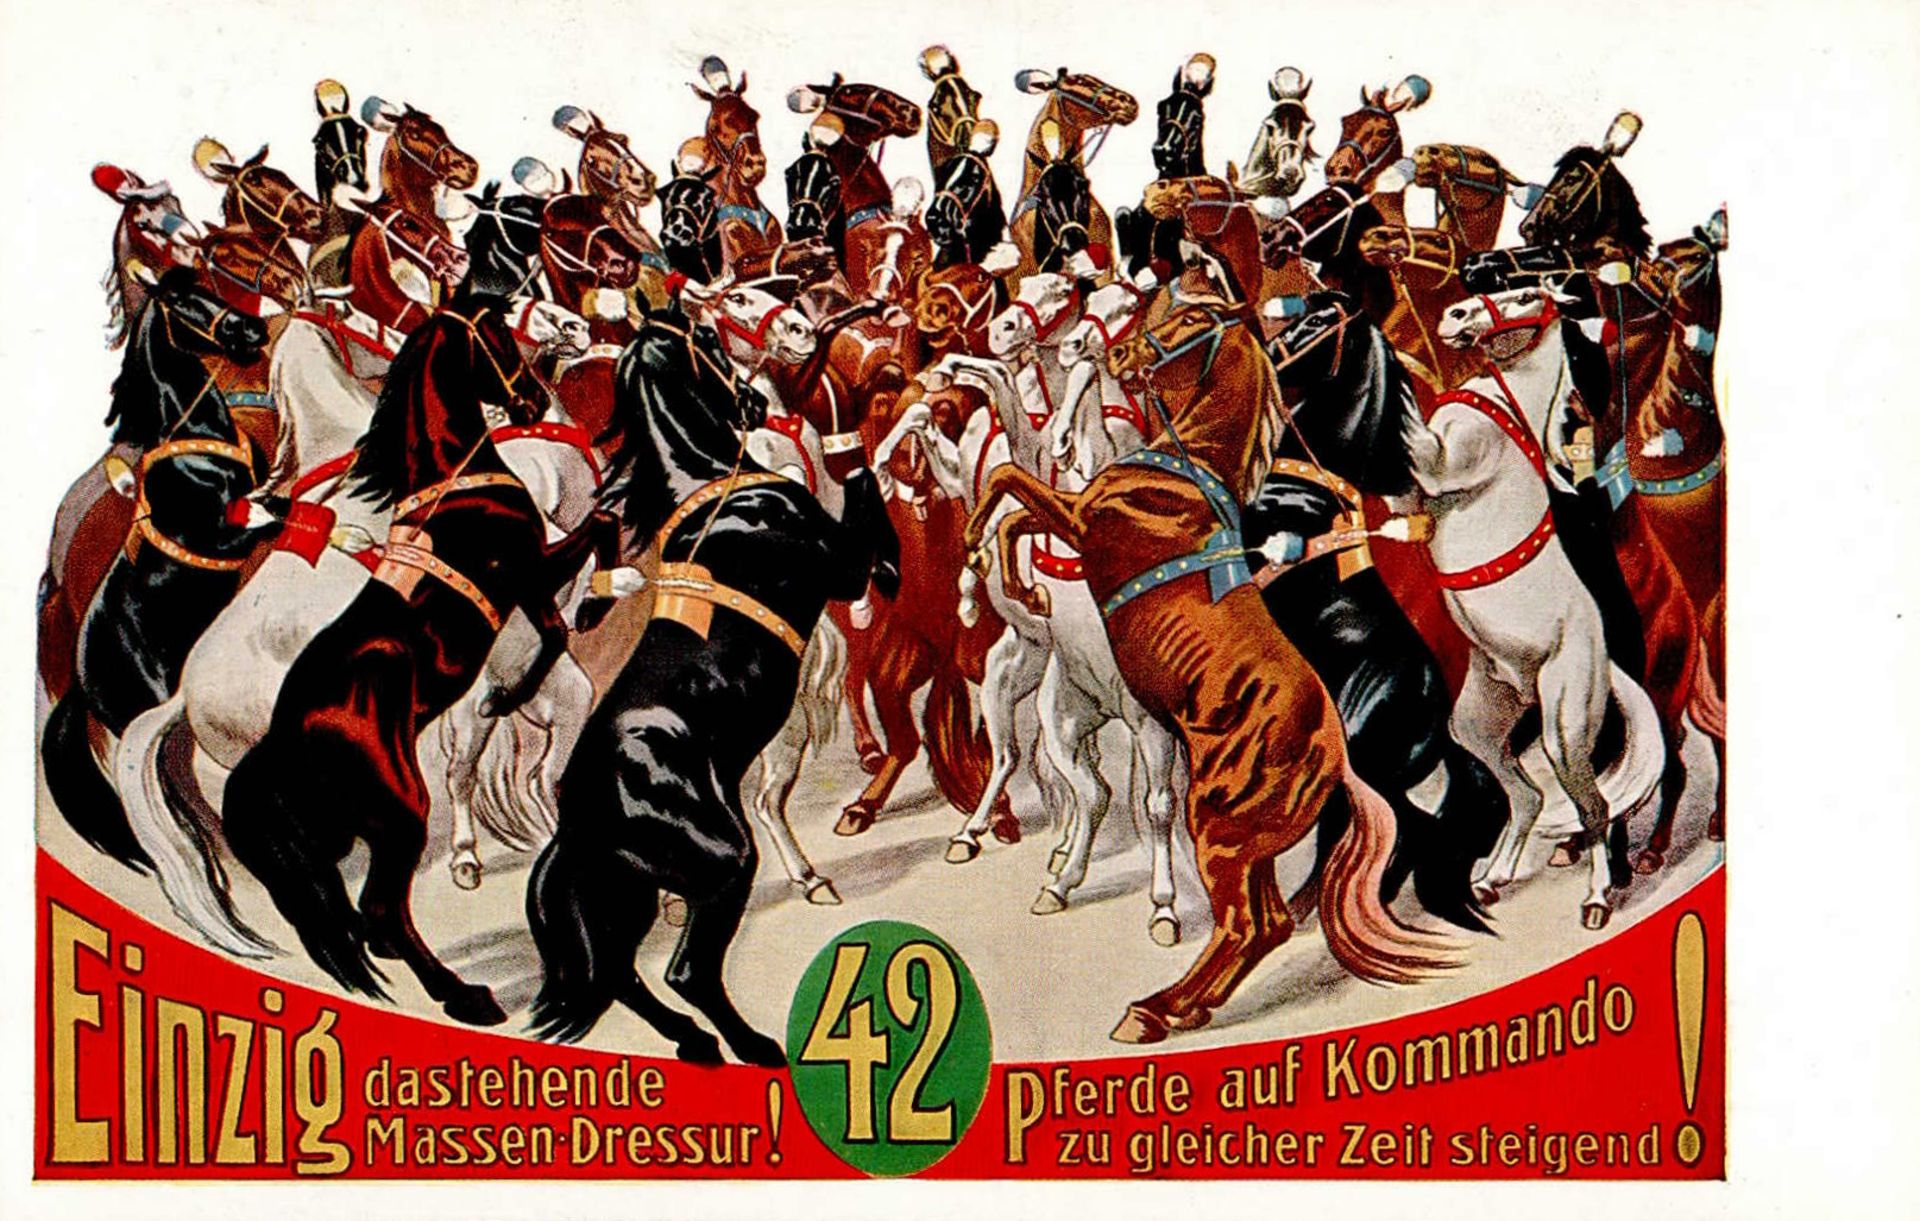 Zirkus Massen-Dressur Einzig dastehende 42 Pferde auf Kommando zu gleicher Zeit steigend I-II